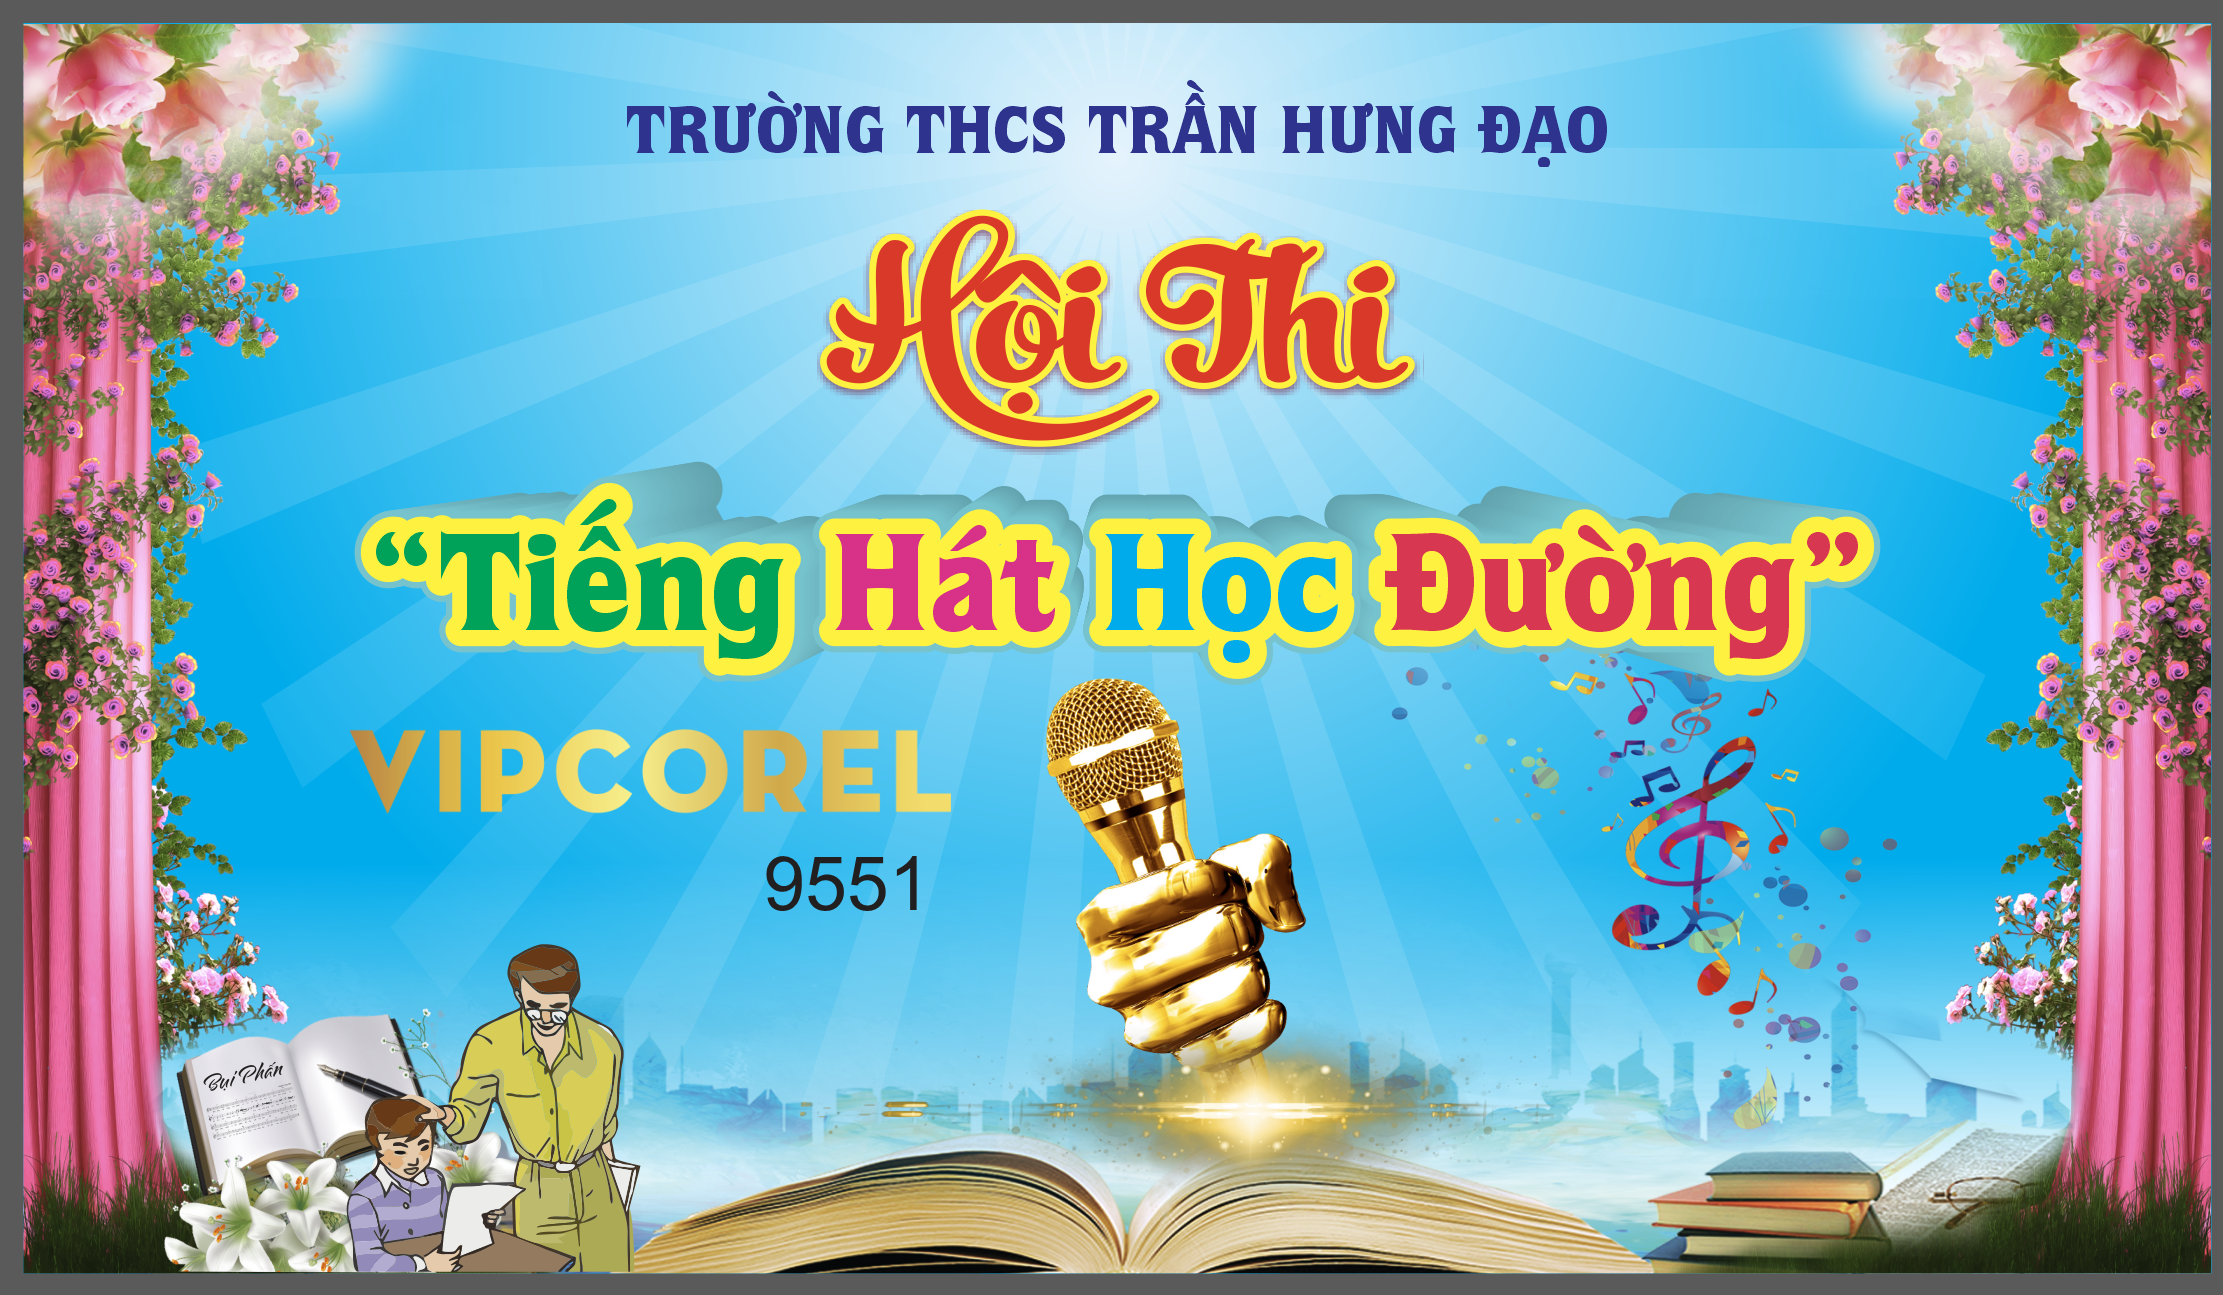 hoi thi tieng hat hoc duong - thcs tran hung dao.png